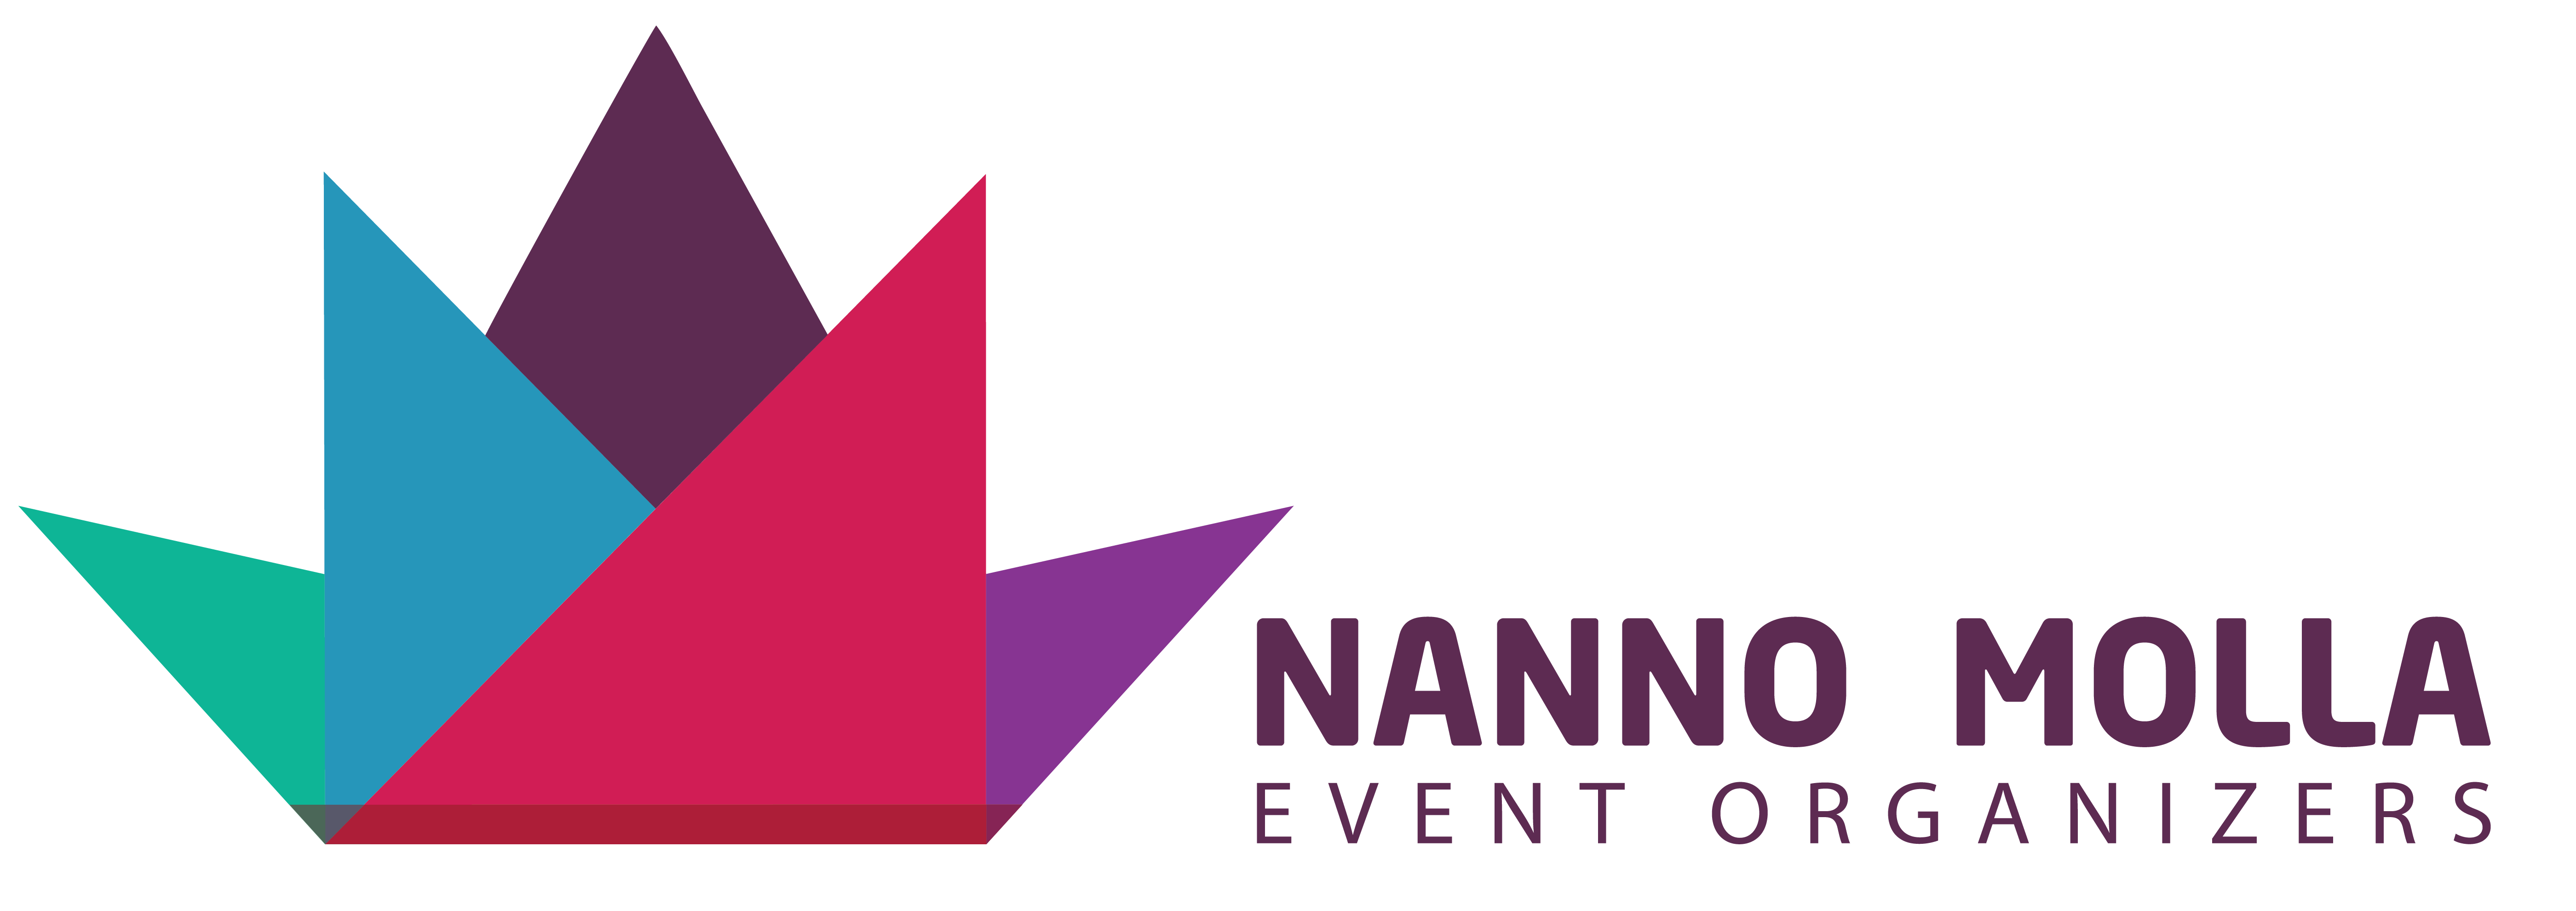 Nanno Molla Event Organizers